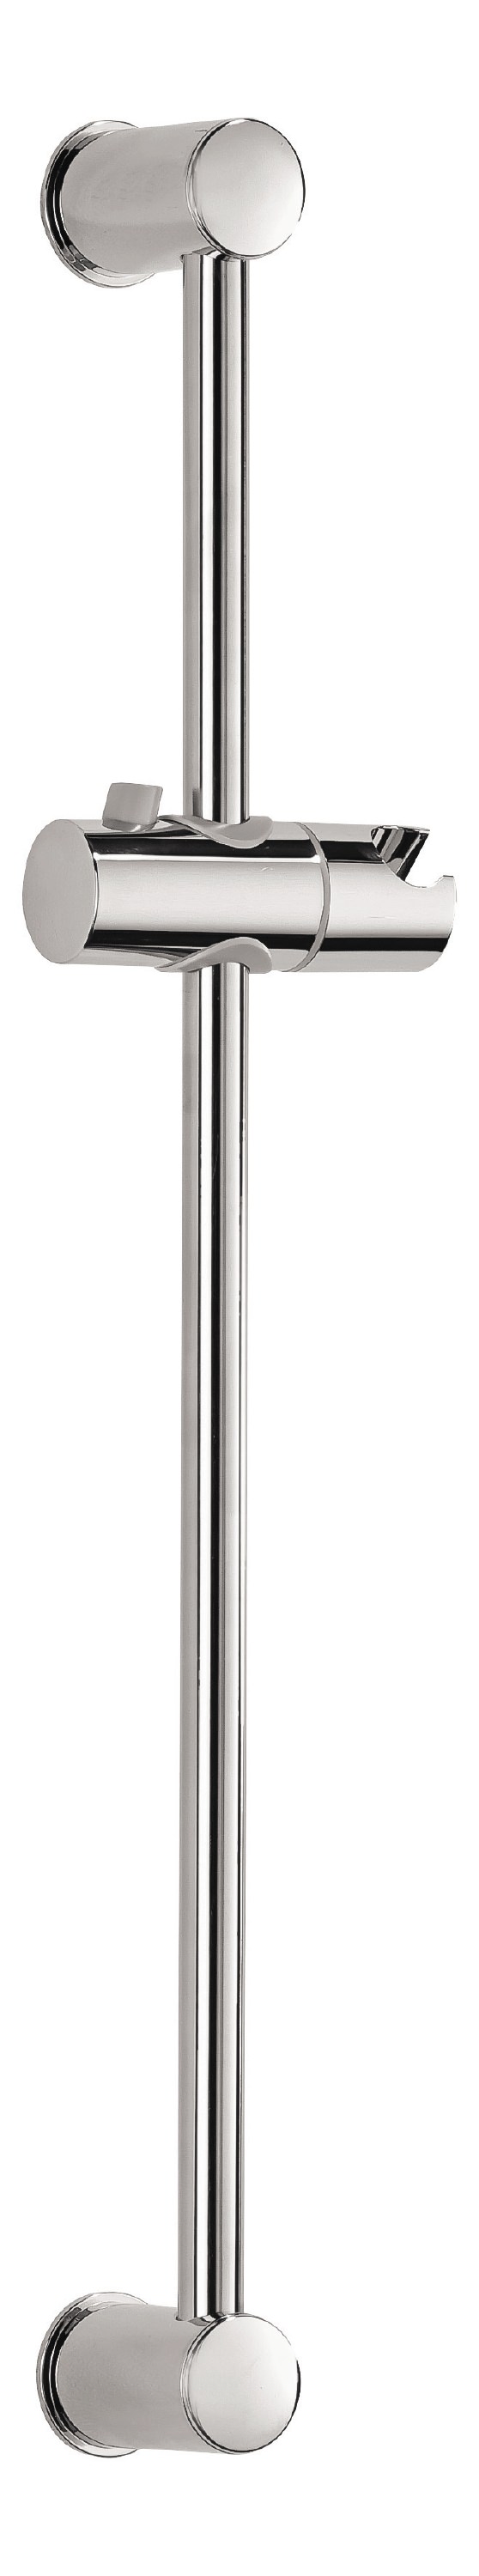 Duschstange mit Schiebegleiter, Ø 18 mm x 600 mm, aus Metall in Chrom